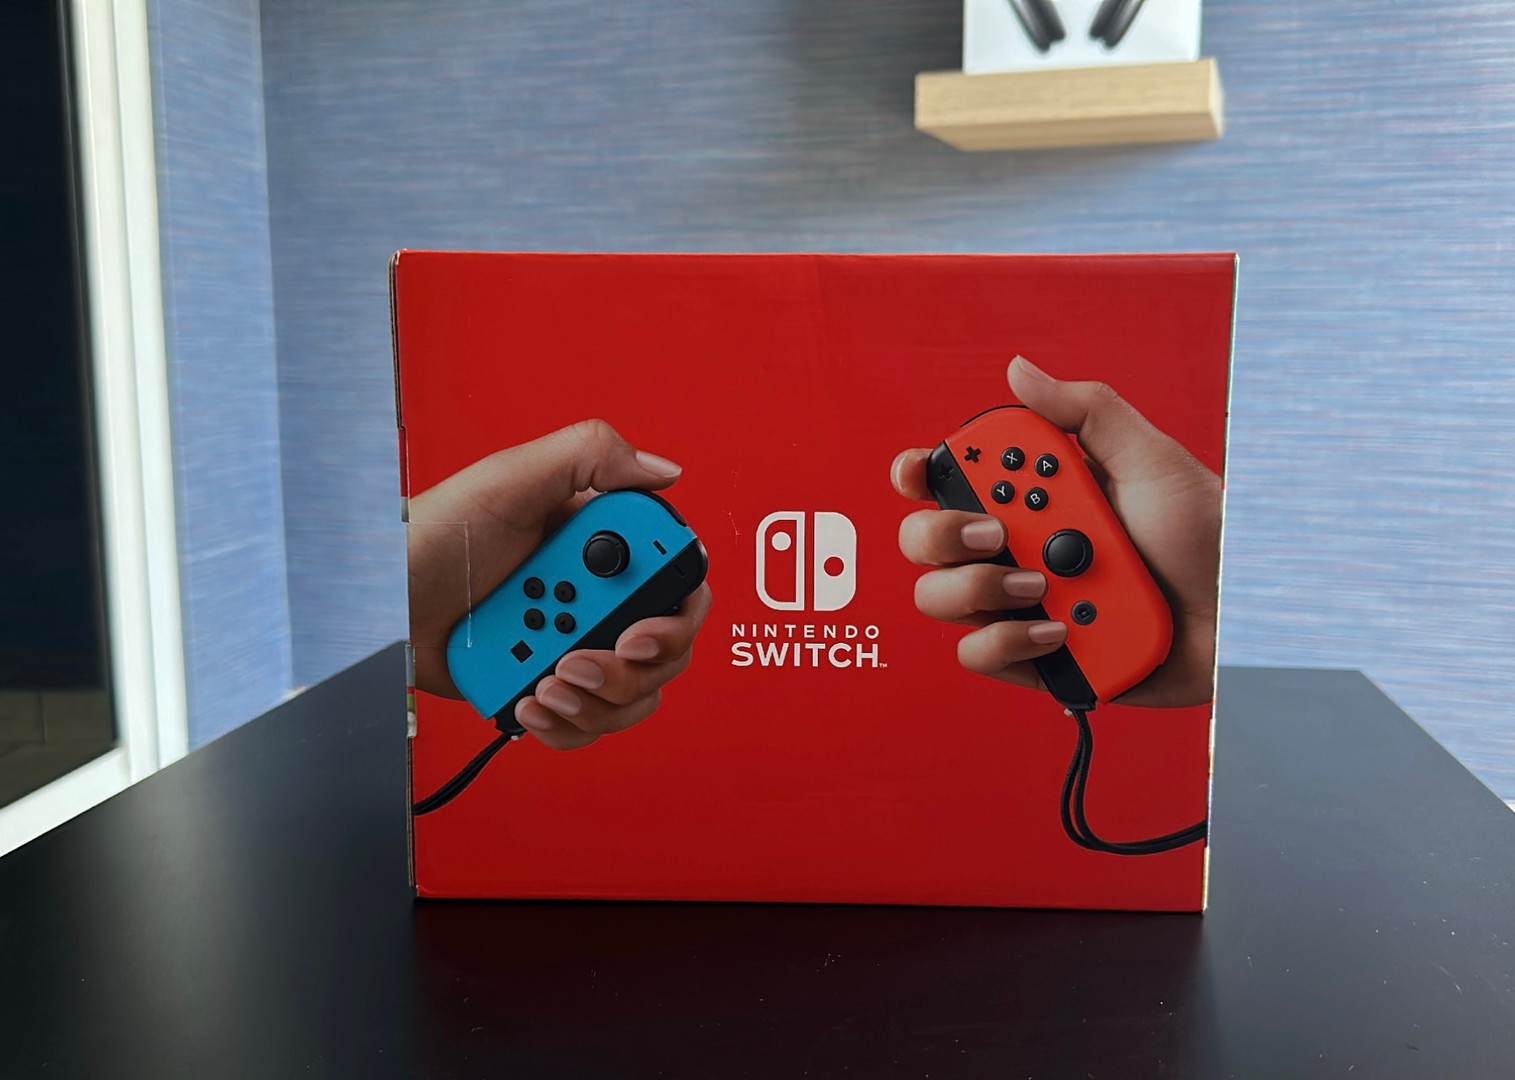 Vendo Consola Nintendo Switch Version Mejorada Nuevos Sellados, RD$ 16,500 NEG 1